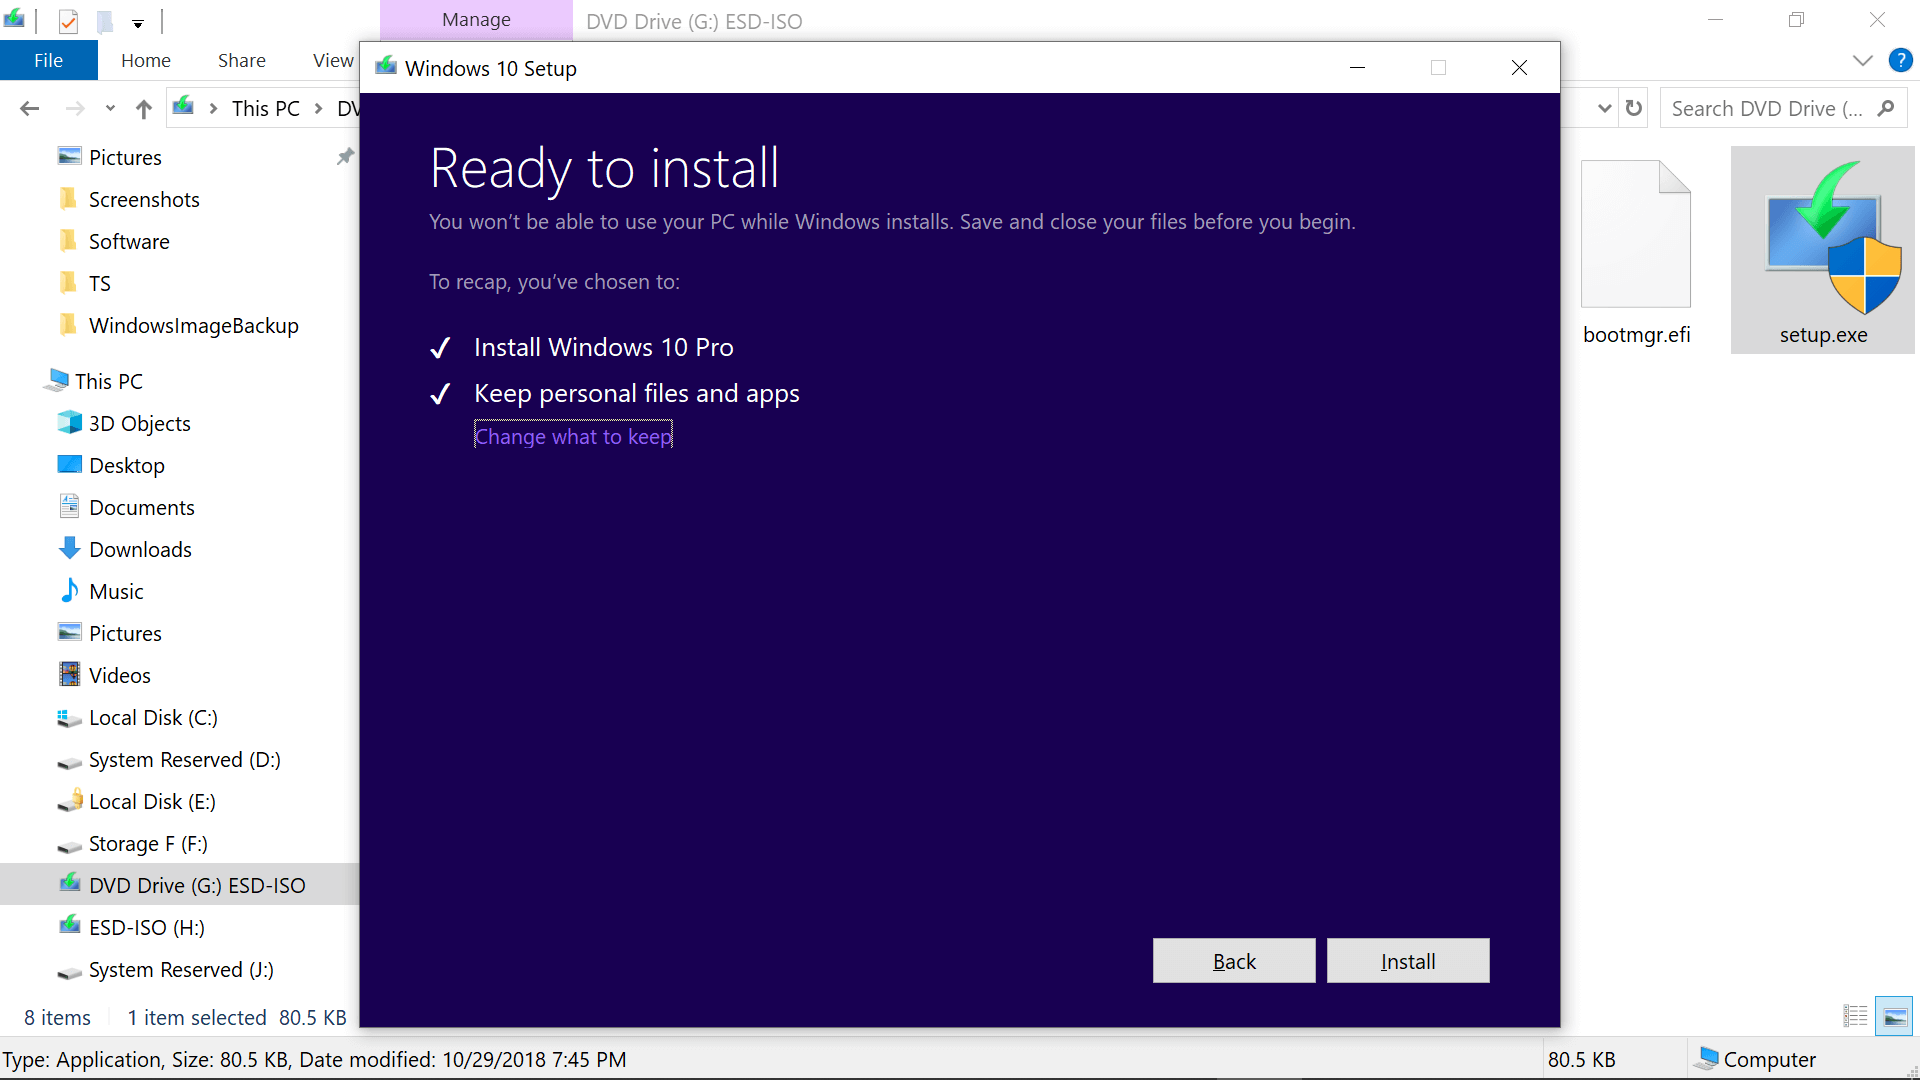 Update Windows
Reinstall the application